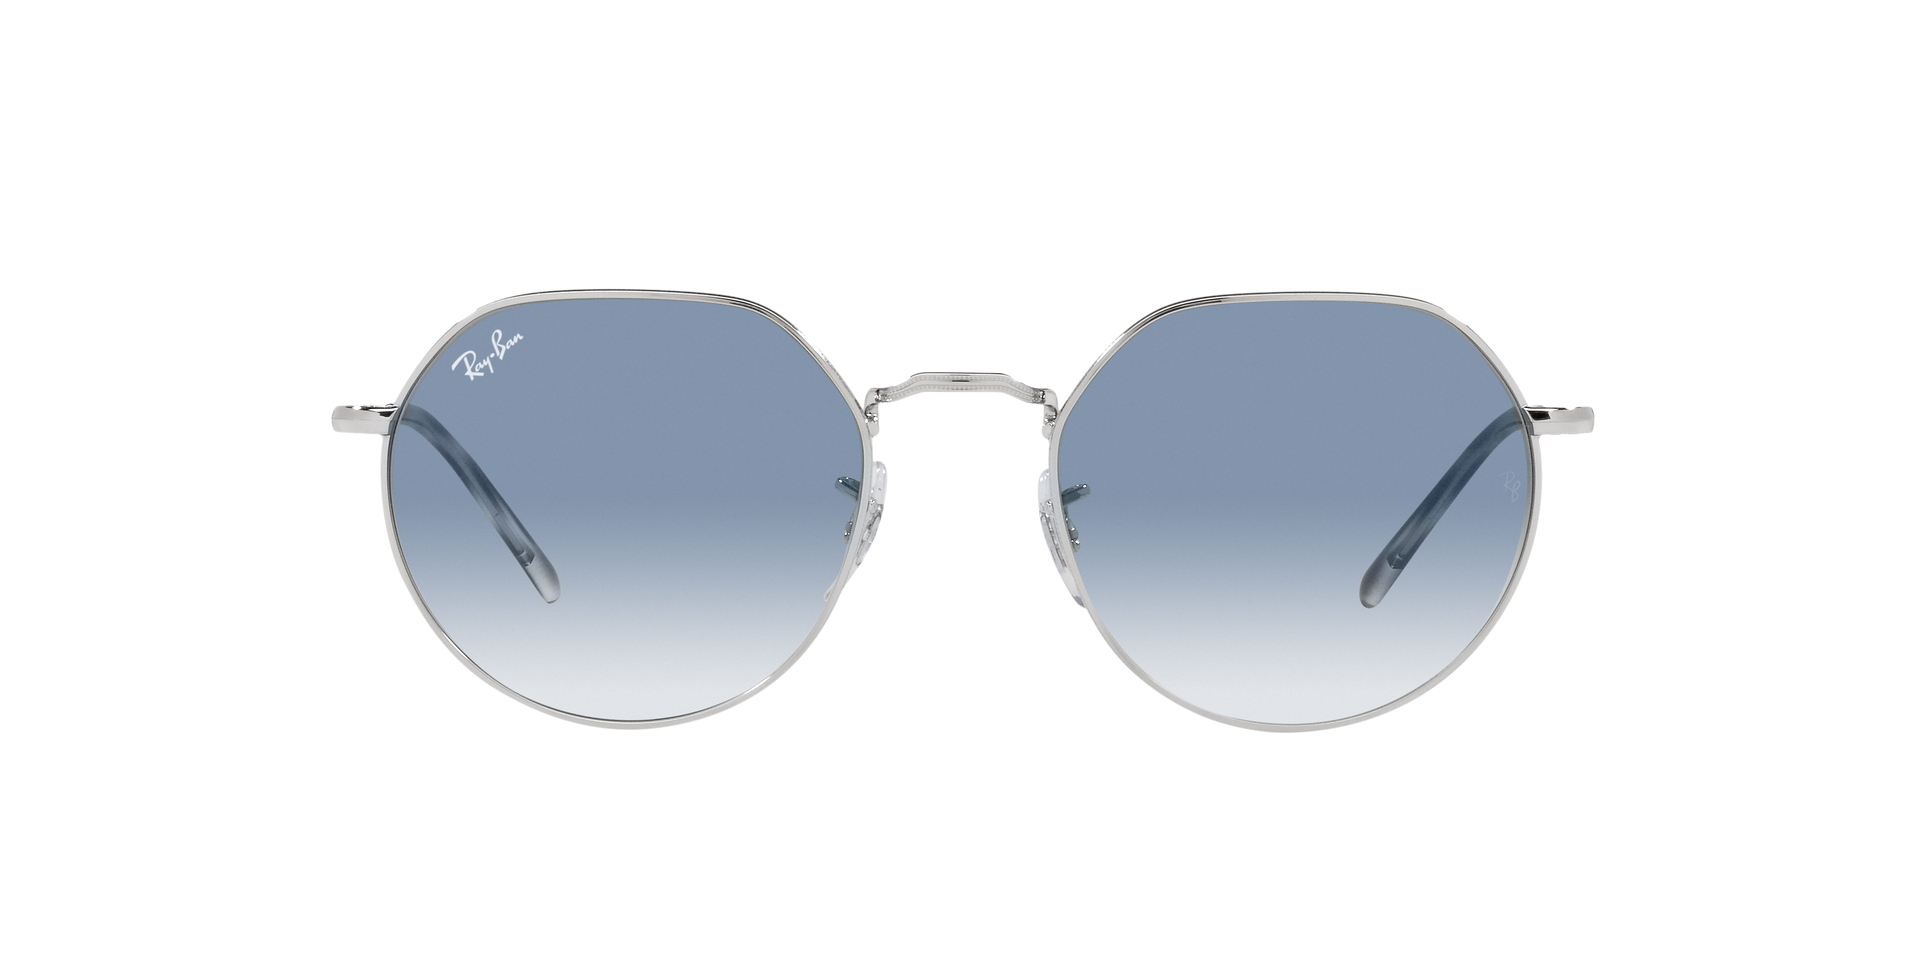 rb3565, buy eyeglasses online uae, rayban, best opticals in dubai, unisex sunglasses, unisex sunglasses